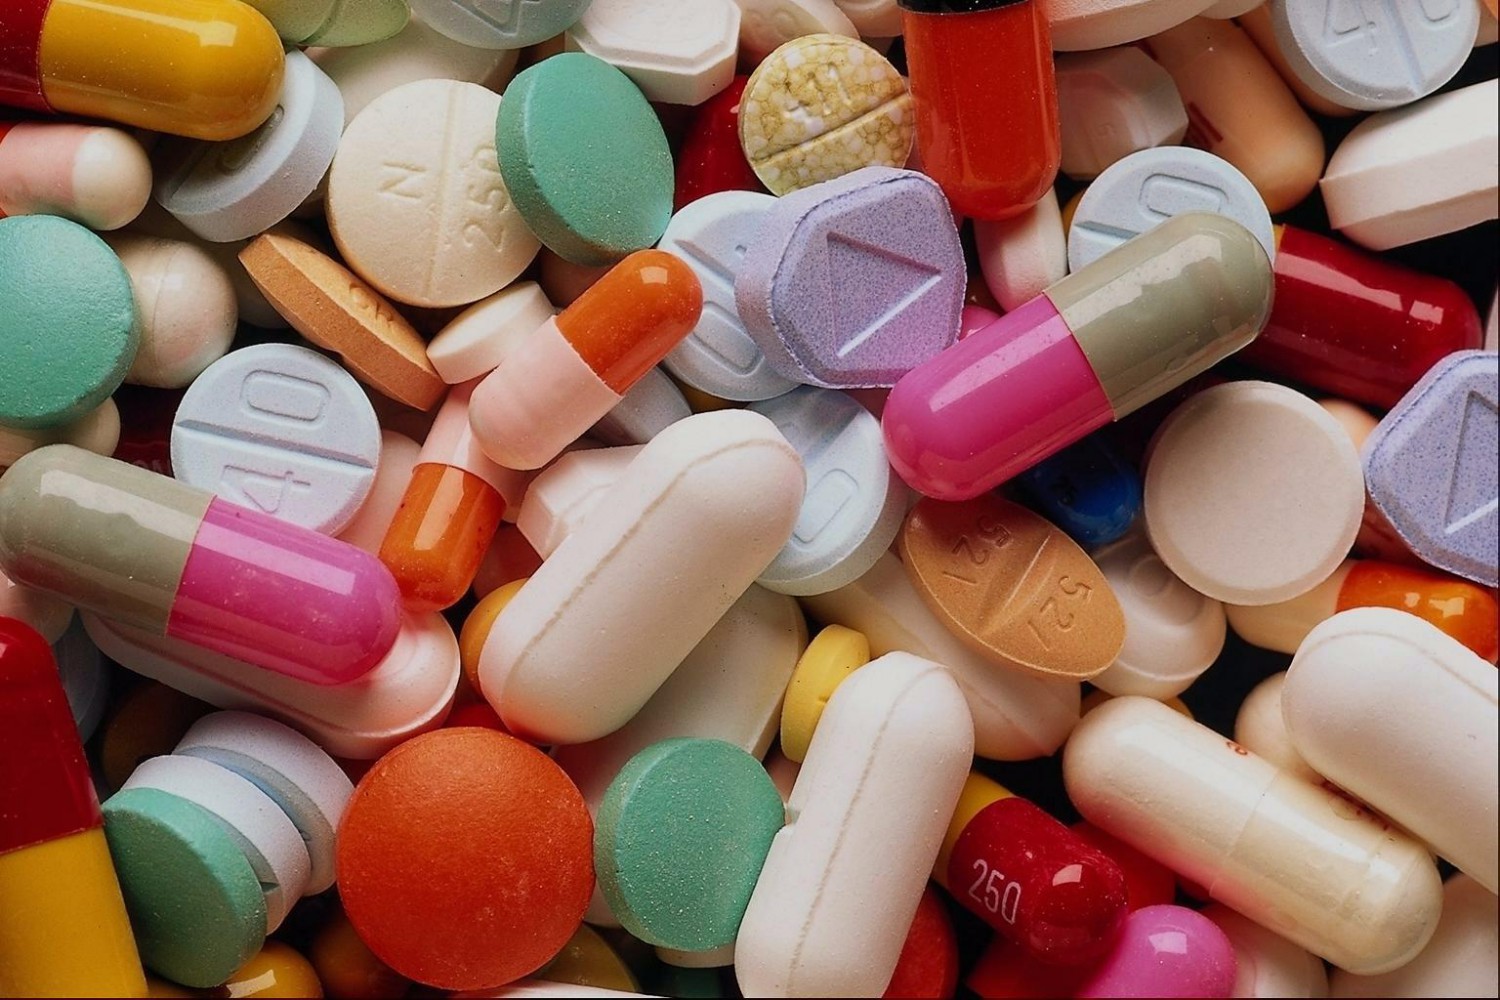 Разницу между ценой на лекарства в аптеке и установленной государством будут доплачивать